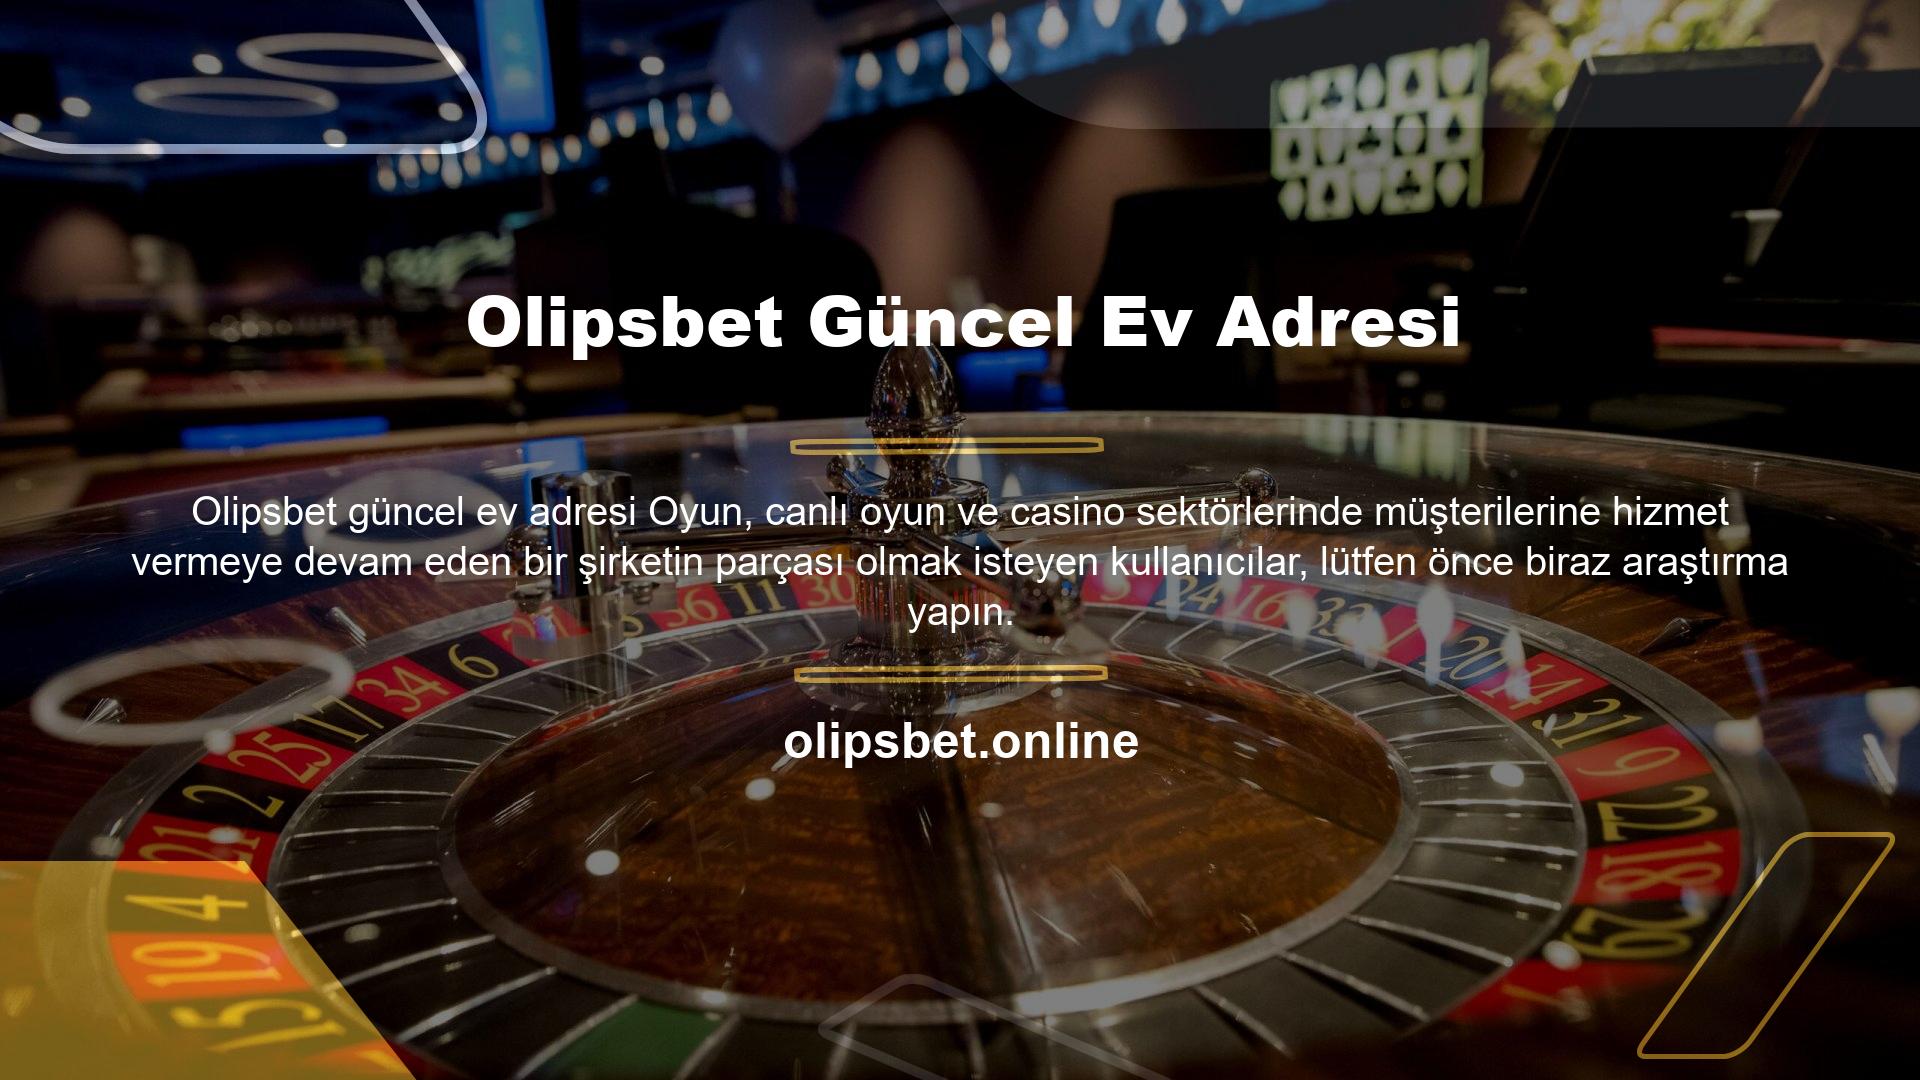 Olipsbet resmi olarak oyun sunucusu üzerinden beğenen kullanıcılar için konserler sunuyor ve üyelik işlemlerinde herhangi bir sorun yaşanmıyor